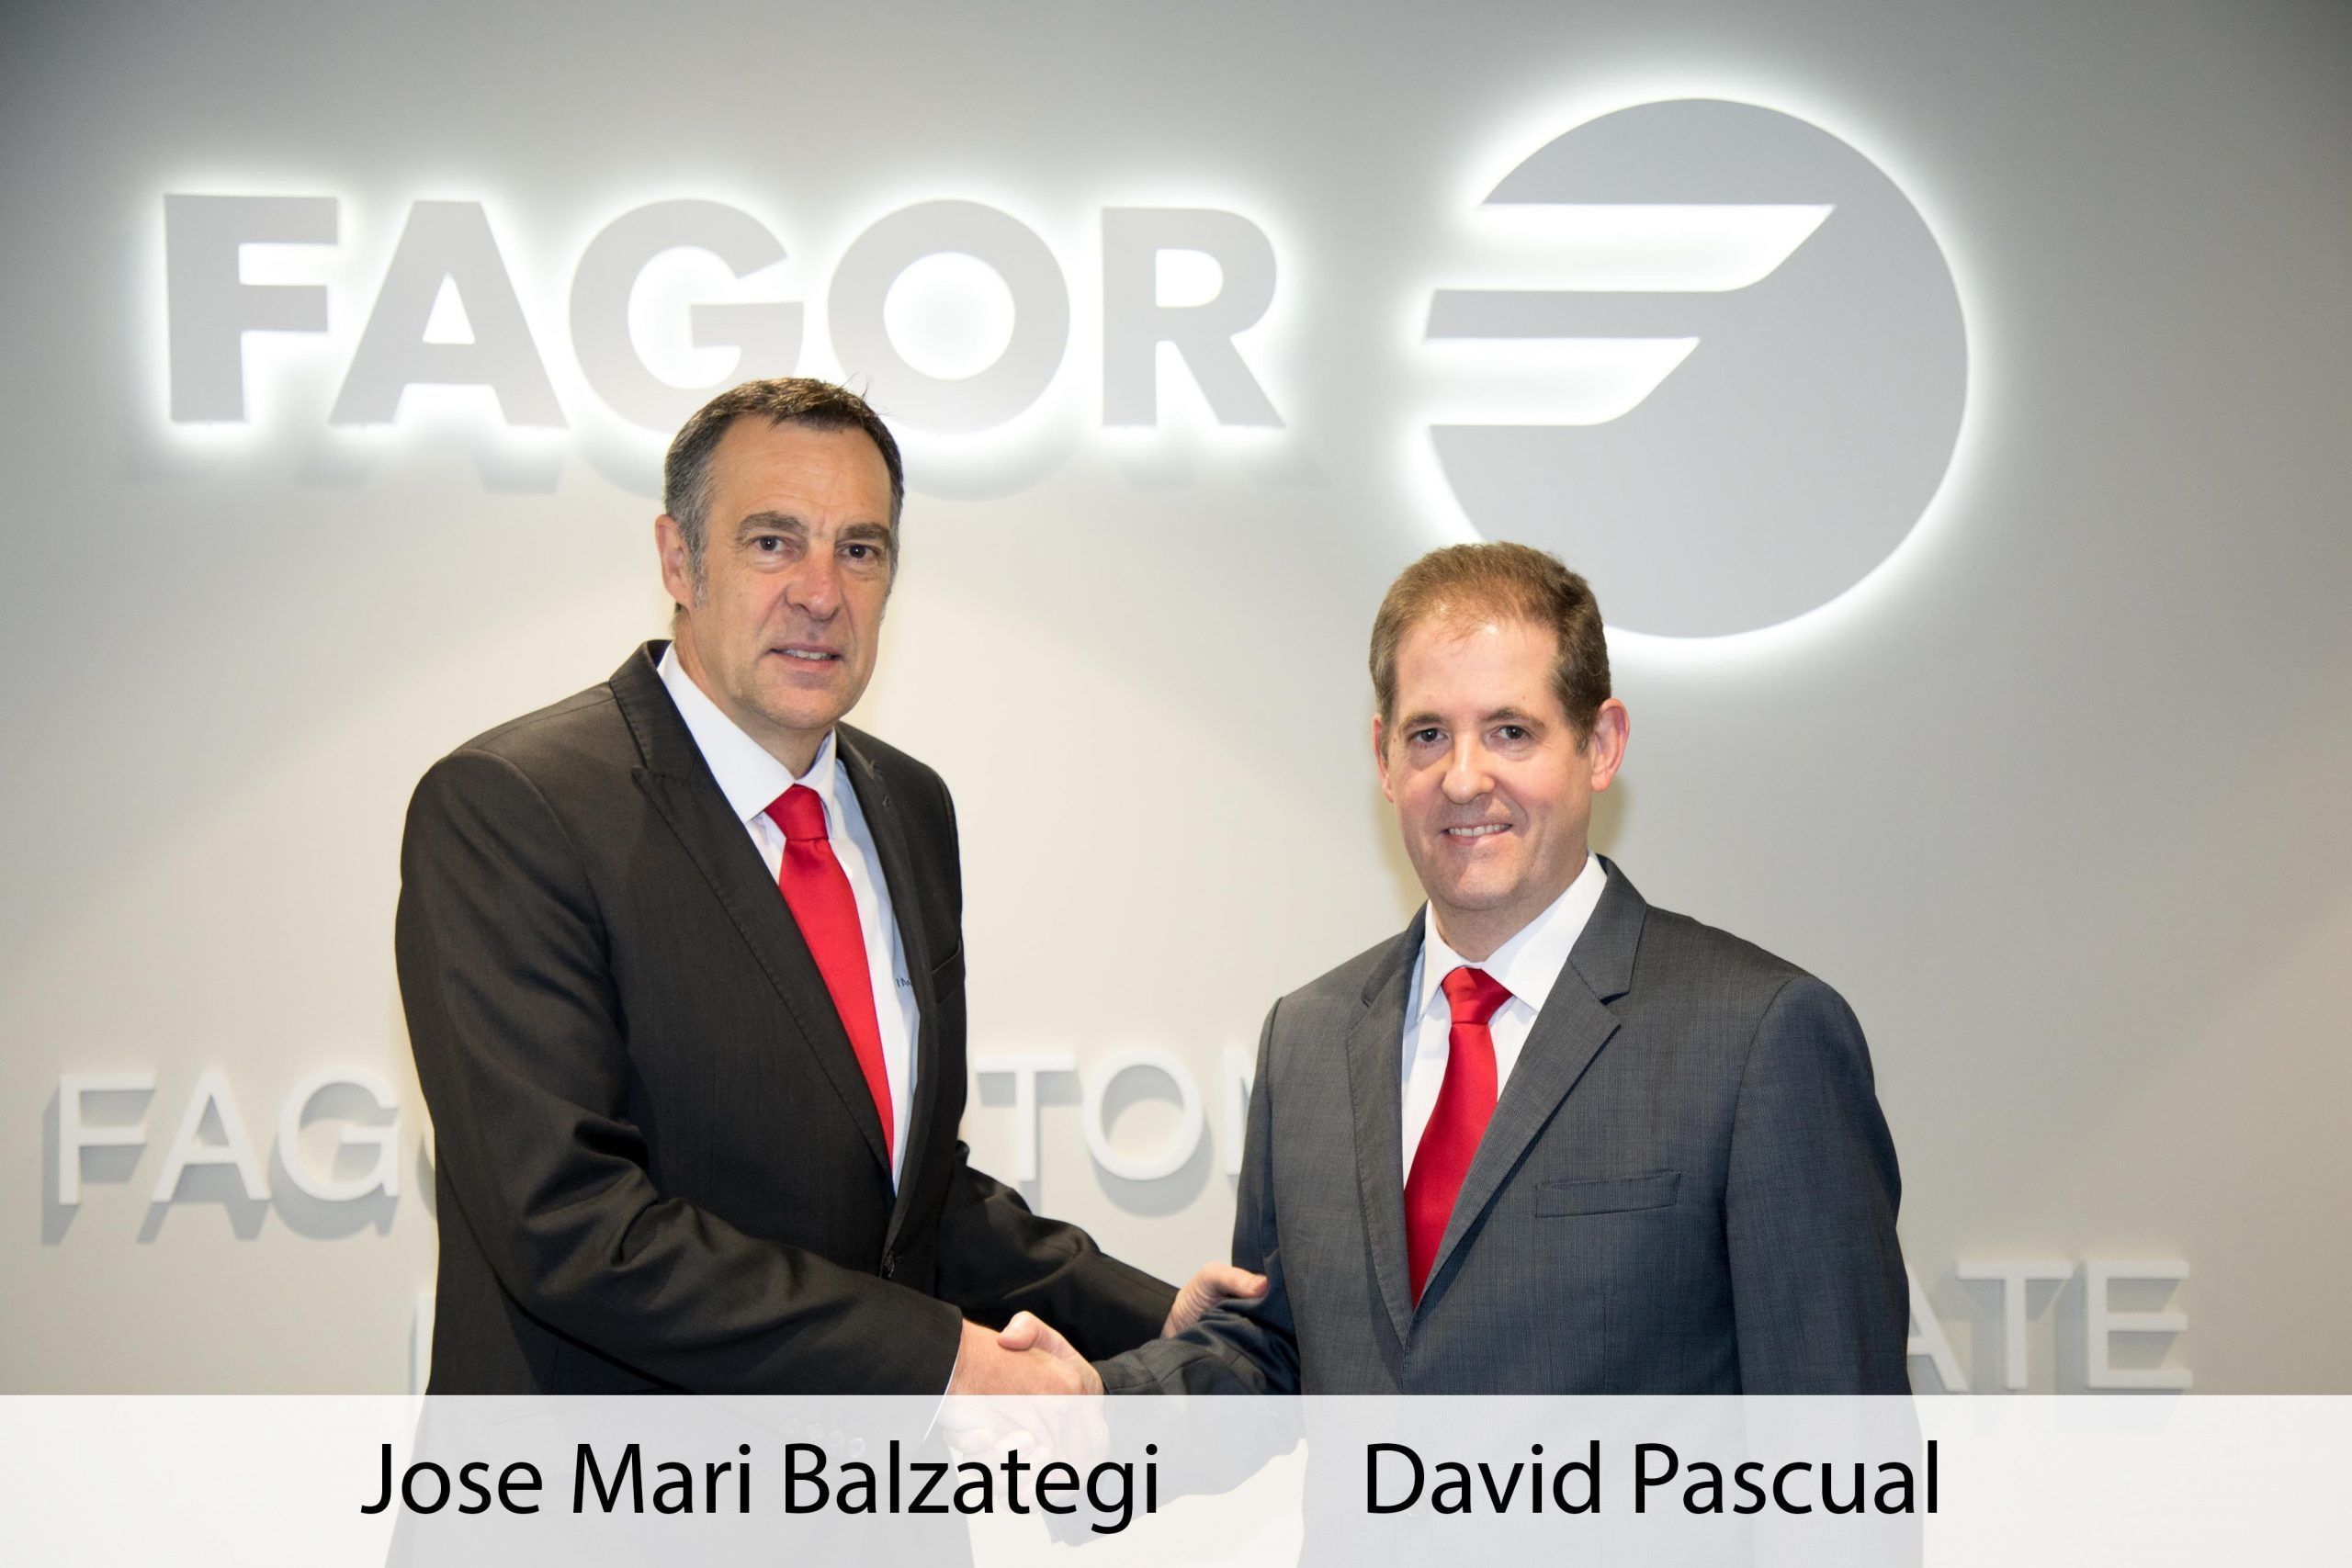 Fagor Arrasate event: David Pascual wird neuer CEO von Fagor Arrasate S. Coop.